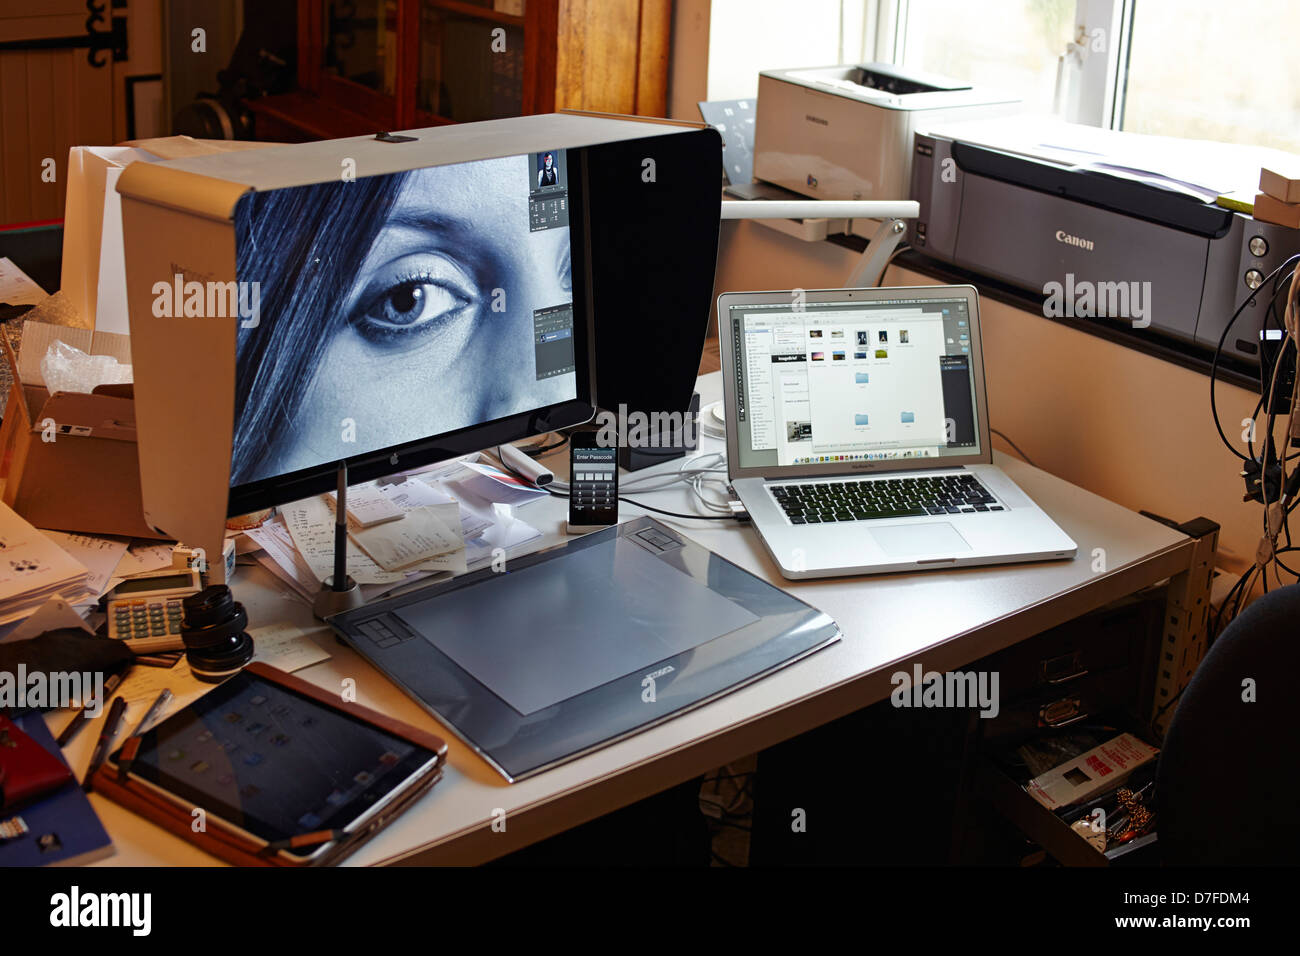 Die Workstation der Fotografen mit dem MacBook-Pro, dem Großbildschirm, dem iPad und den Druckern Stockfoto